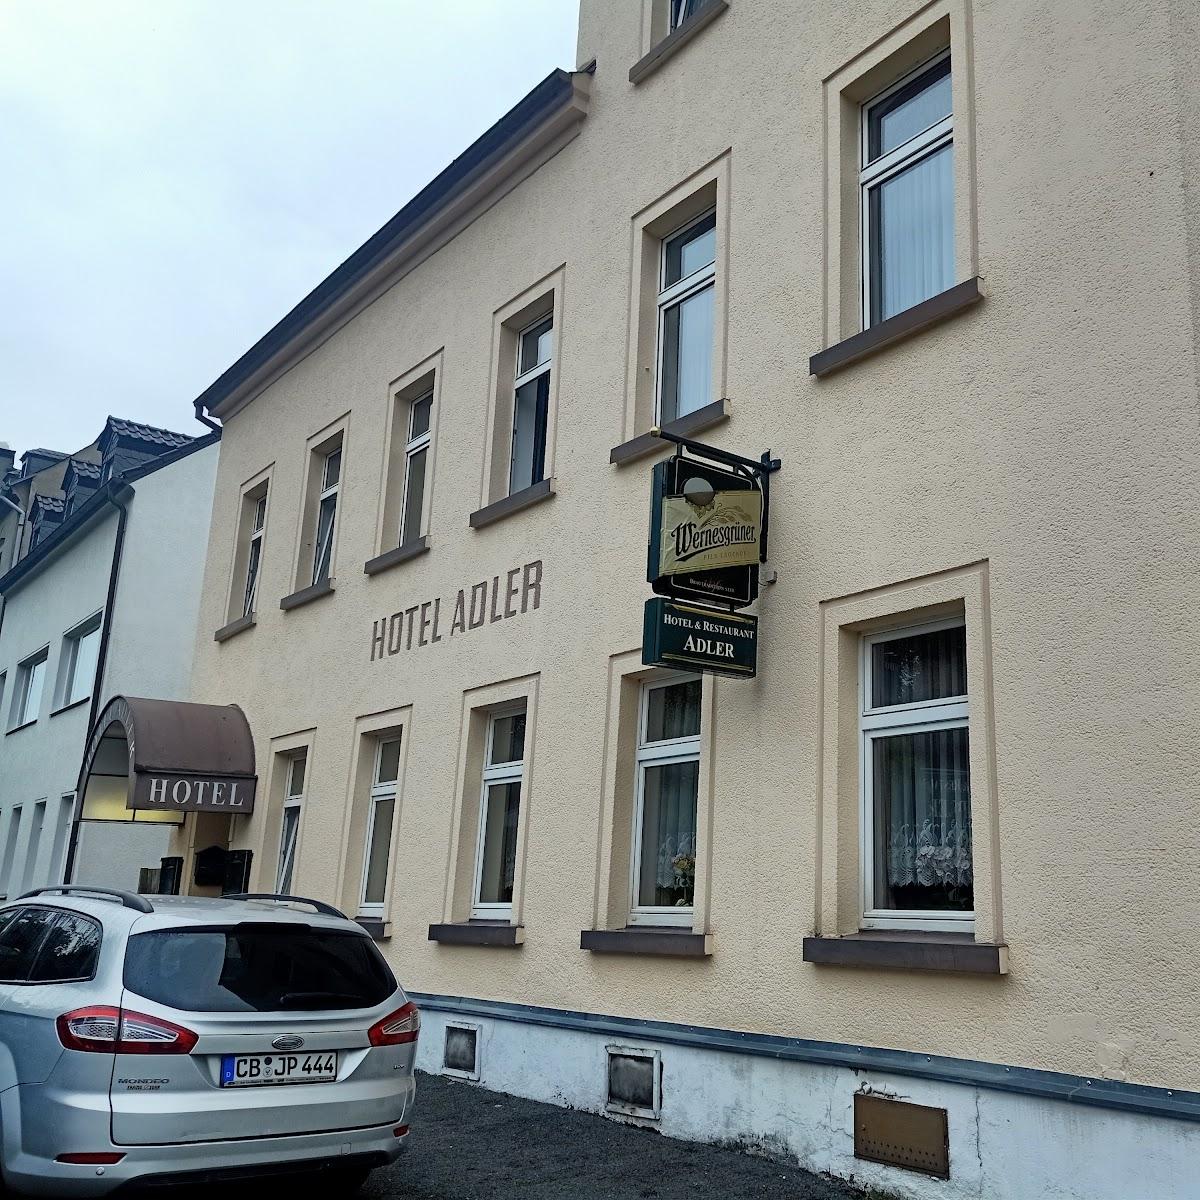 Restaurant "Hotel Adler" in Reichenbach im Vogtland